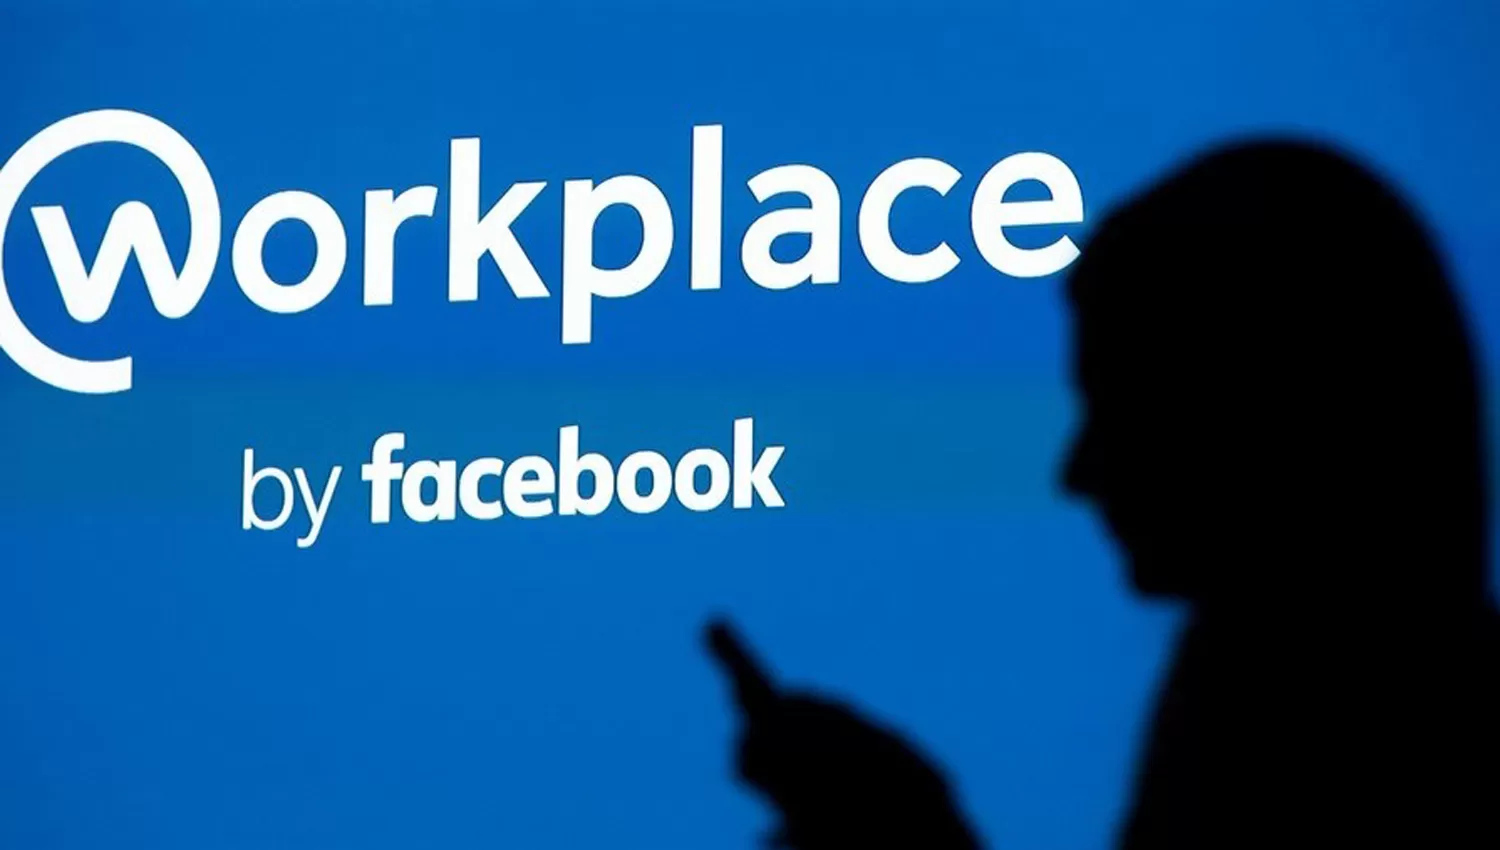 Workplace, la herramienta de Facebook para conseguir trabajo. (Clarín)